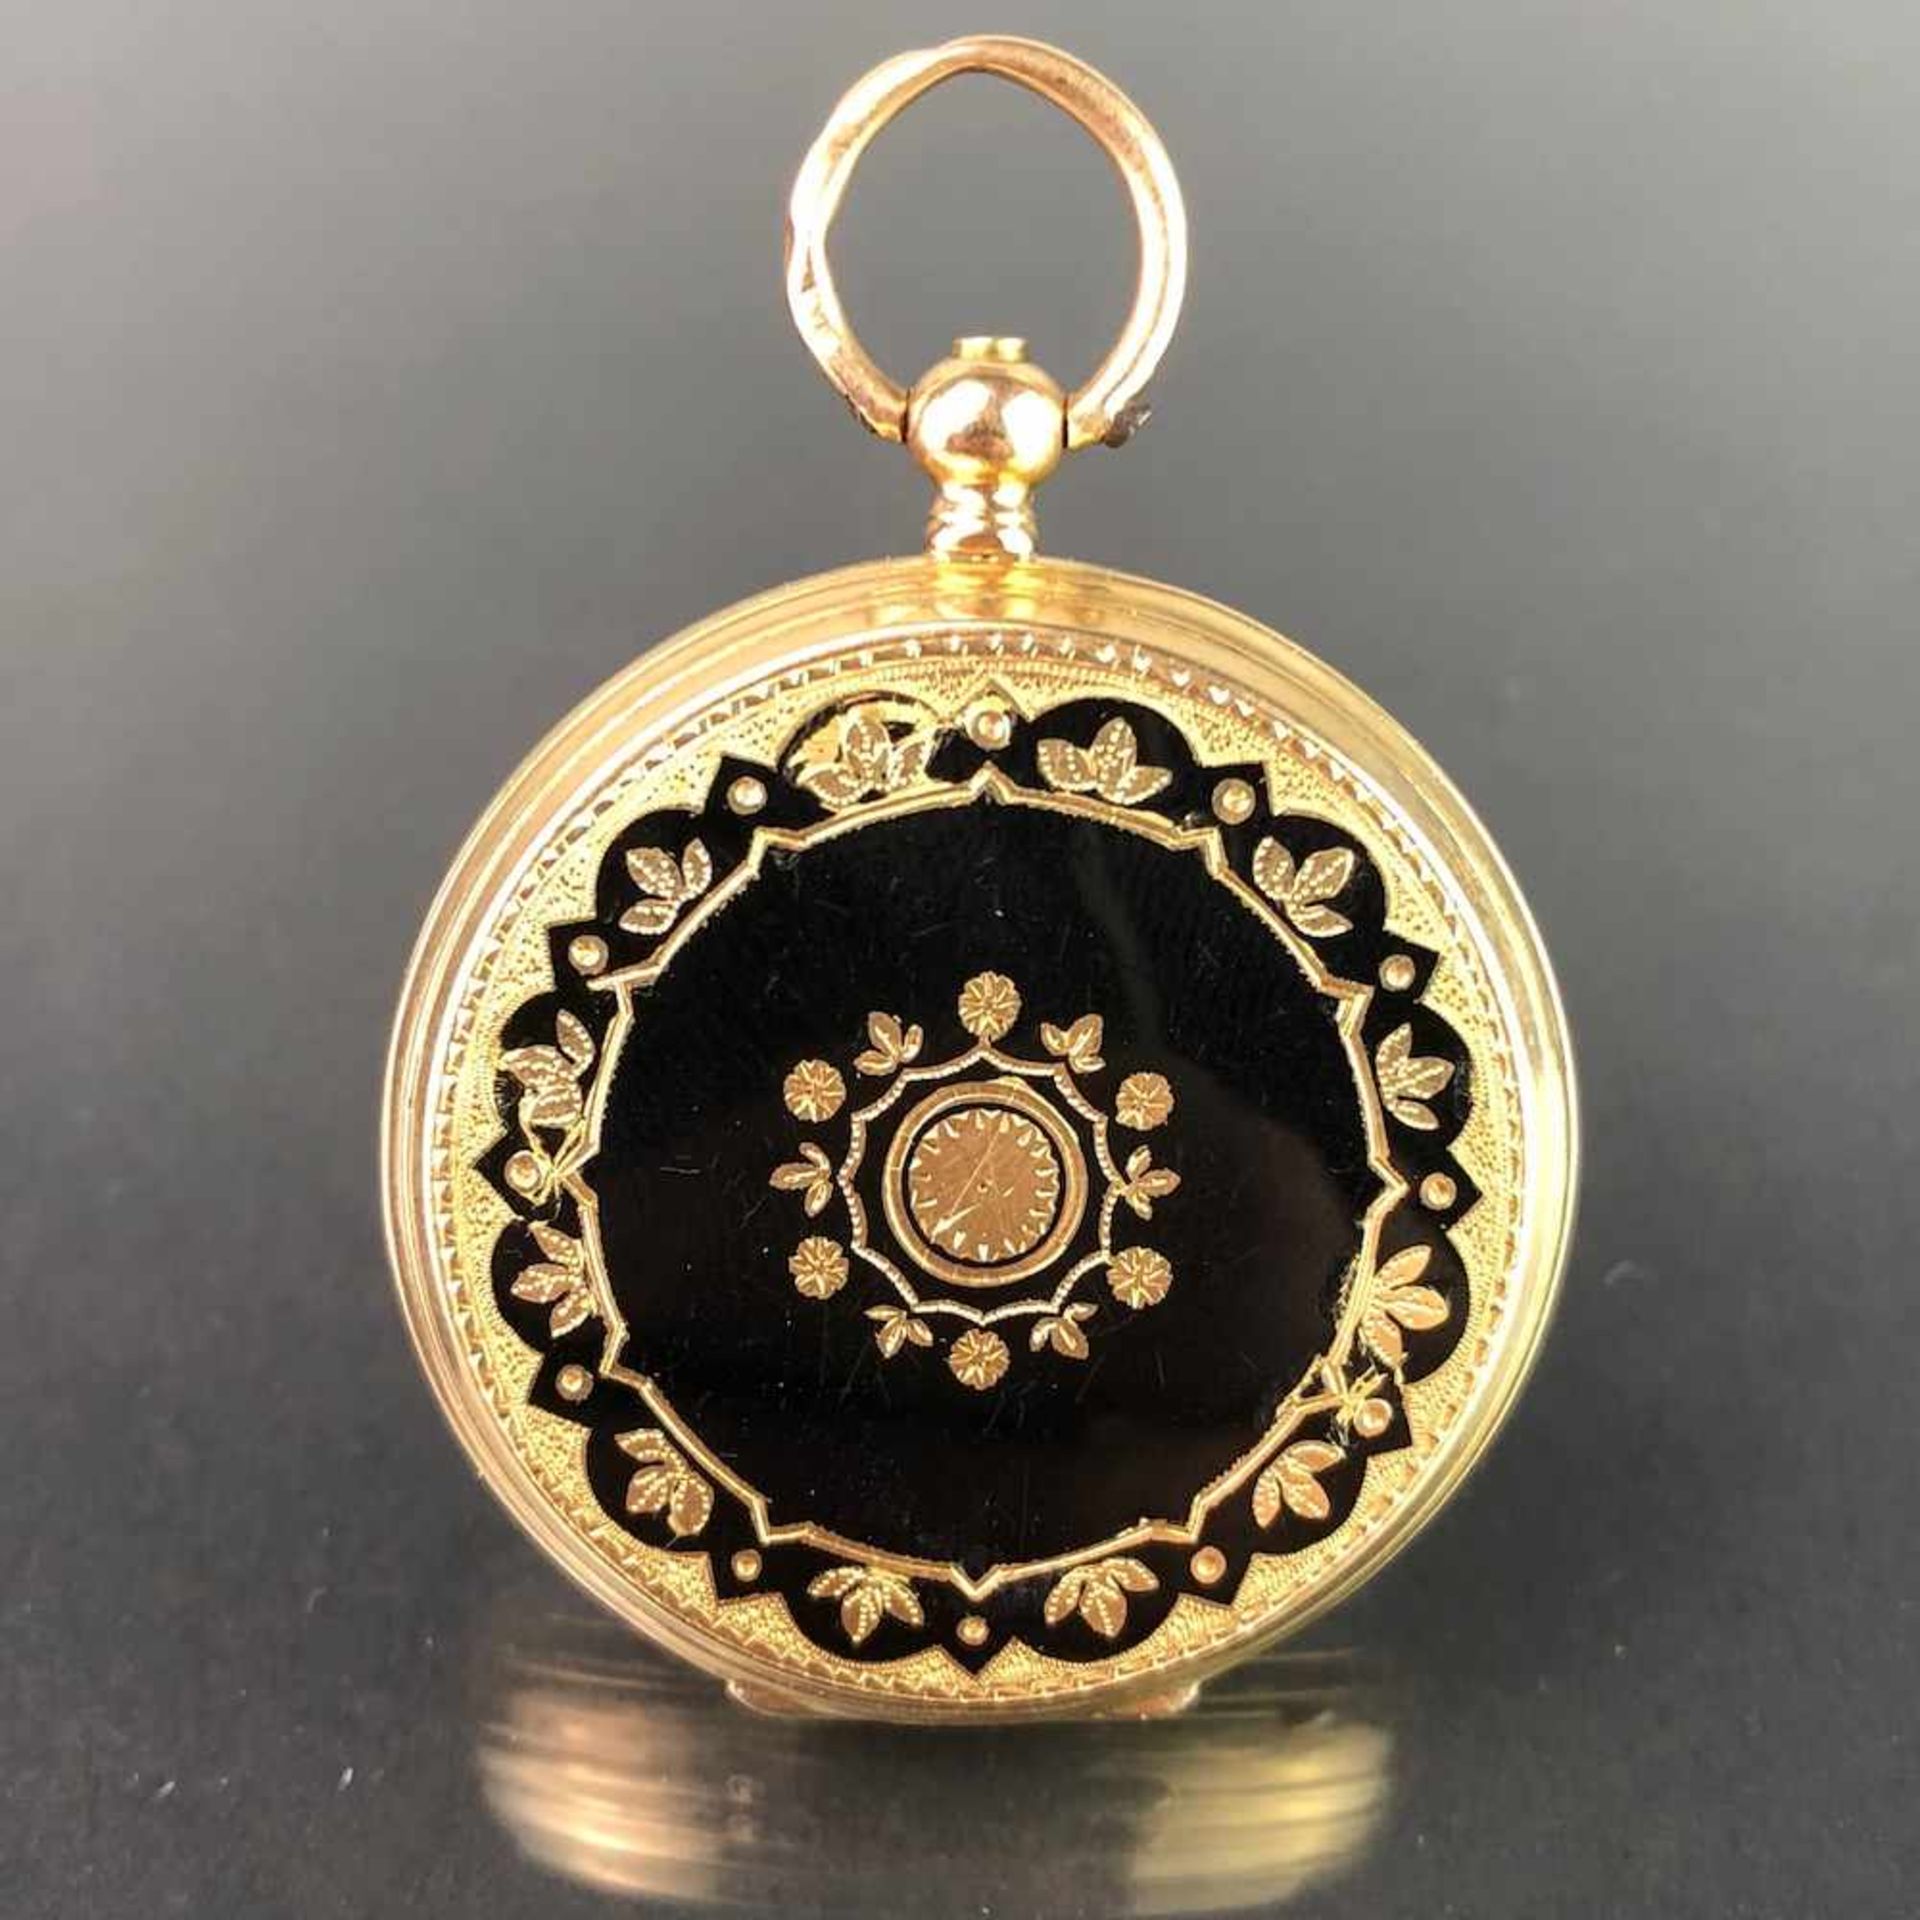 Schlüsseltaschenuhr / Frackuhr / Zylindertaschenuhr: Gelb-Gold 750, Firma Adolphe, Genf / Schweiz, - Bild 2 aus 3